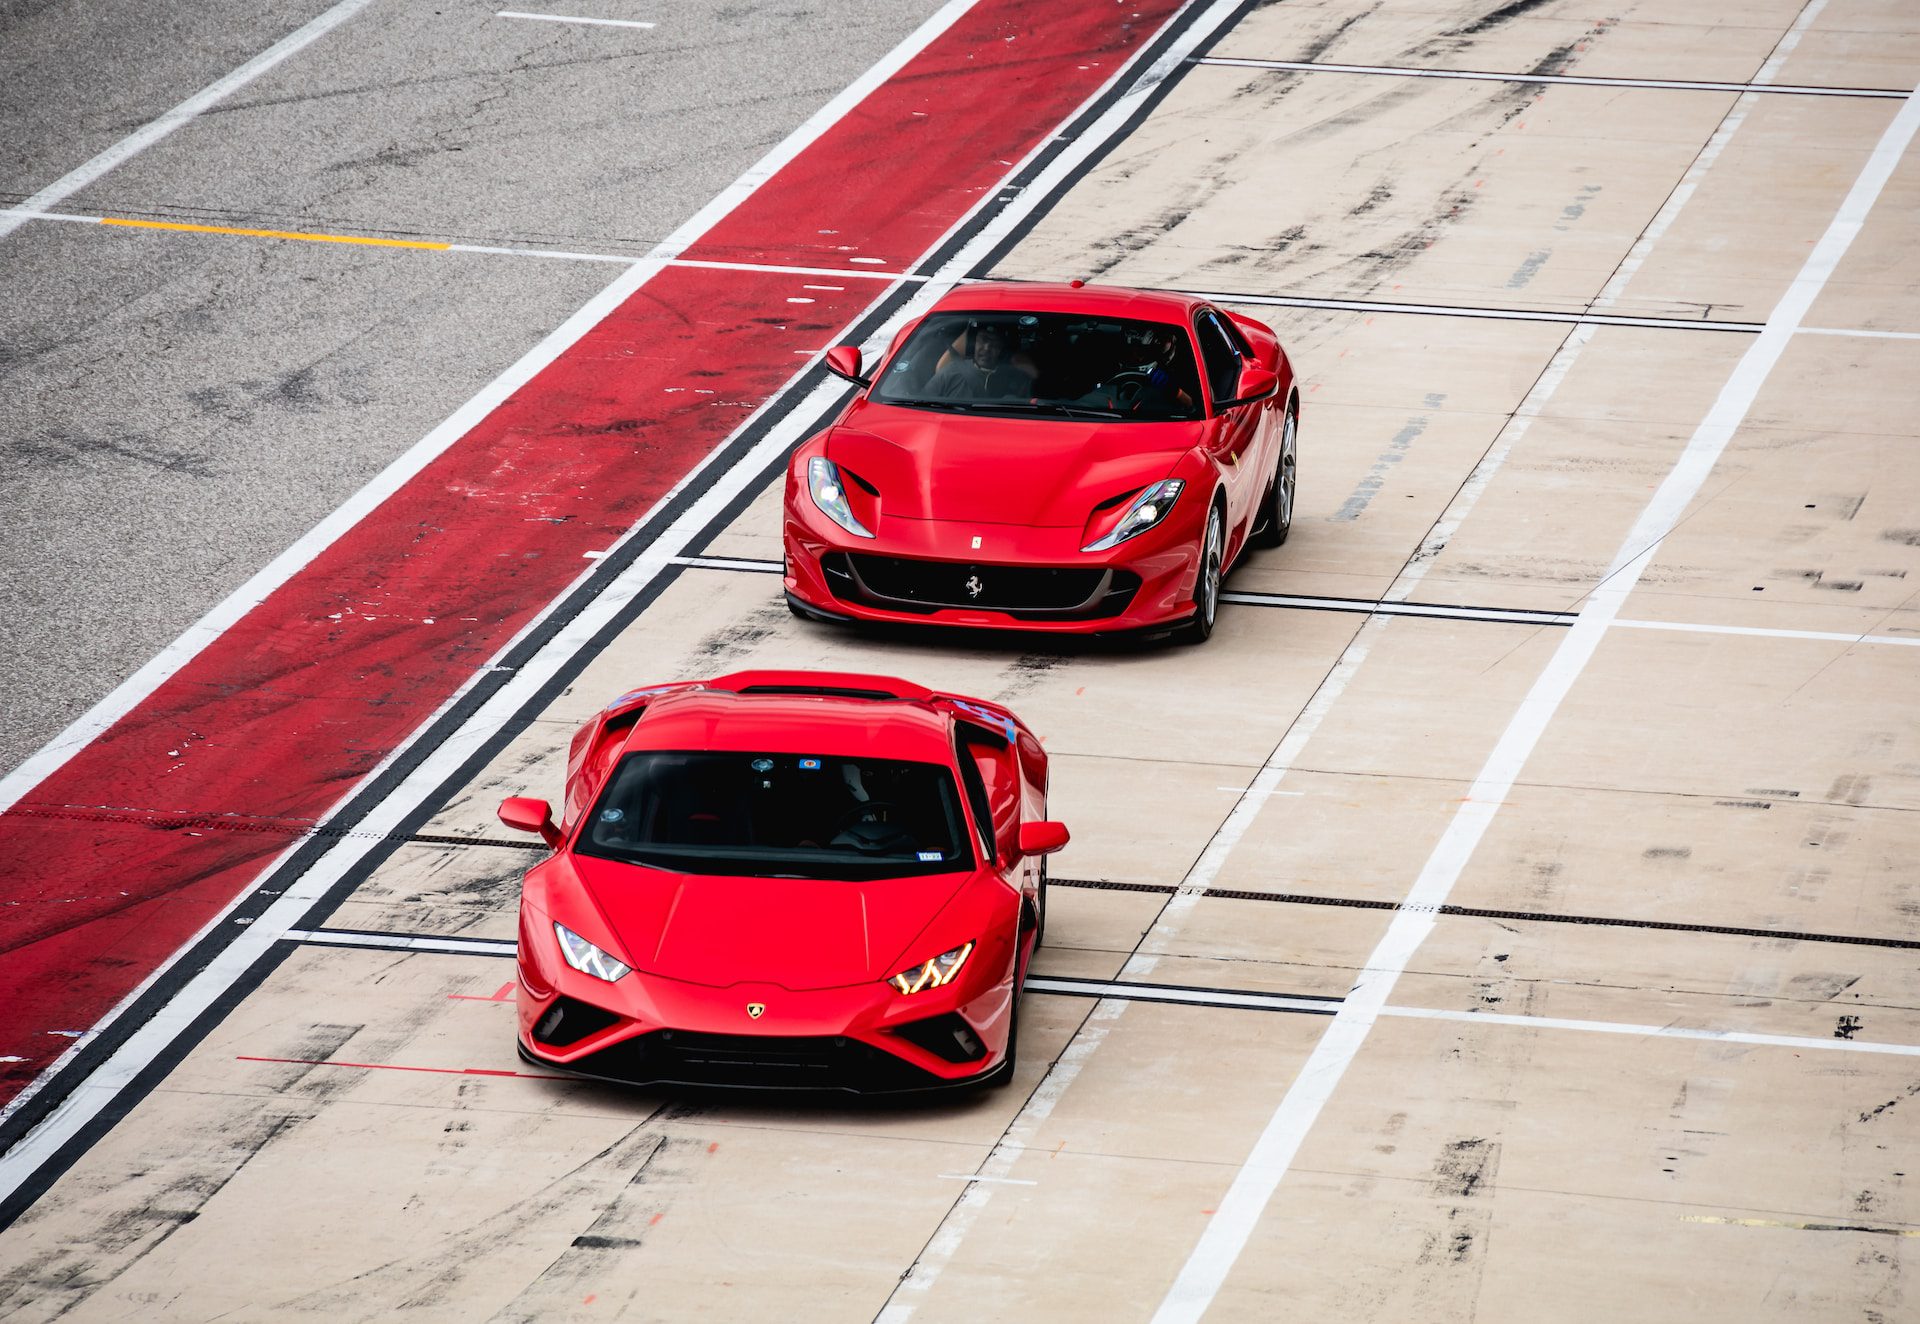 Ferrari Vs Lamborghini - Which Is Better